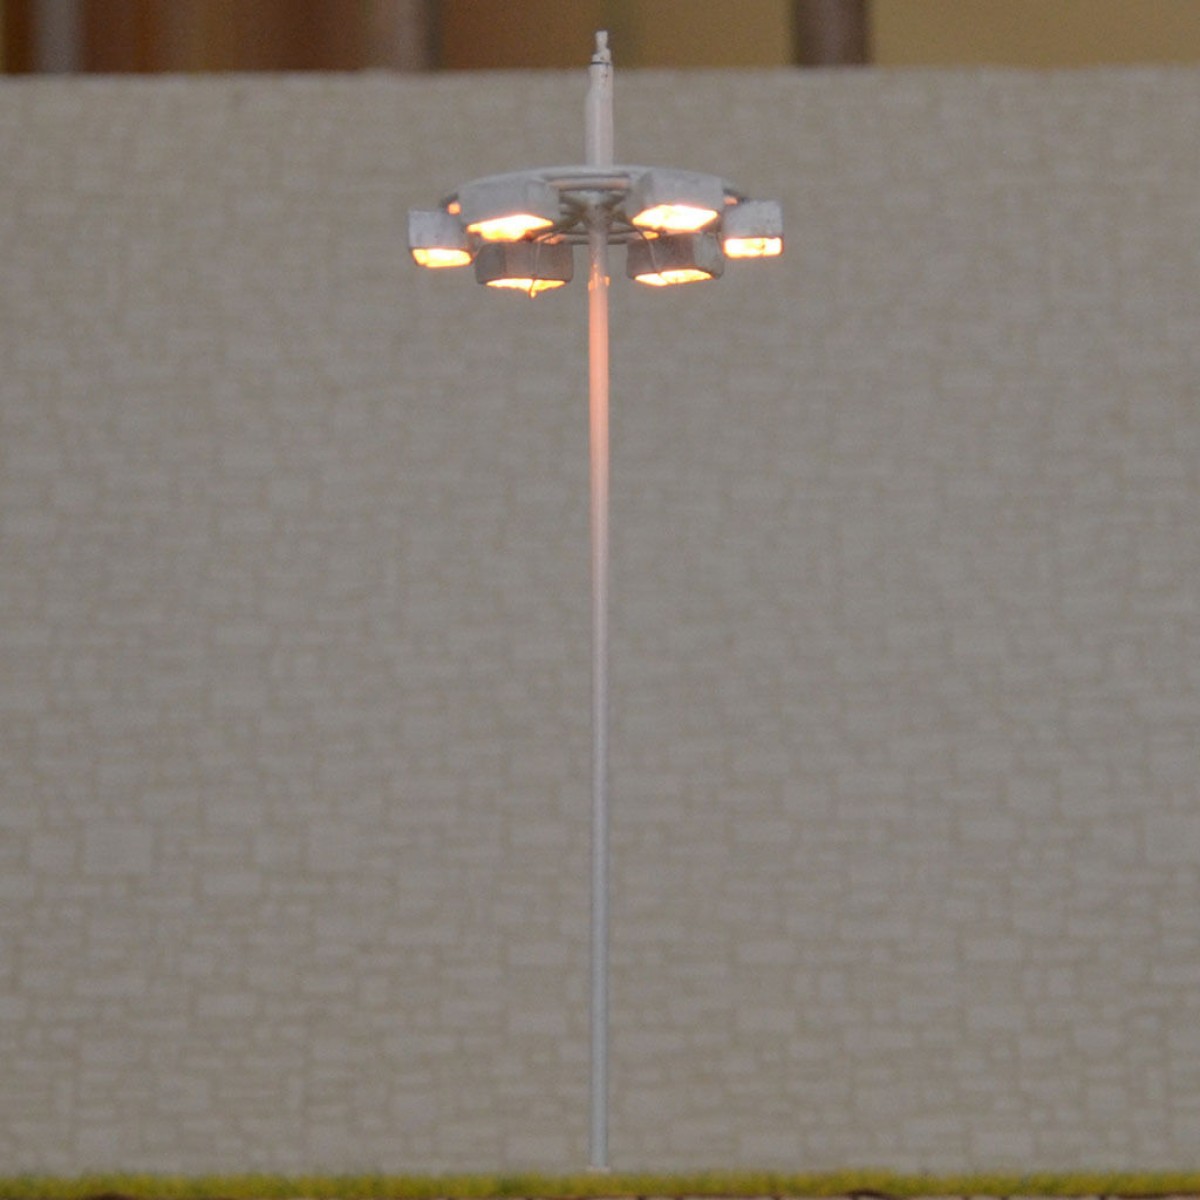 1 x OO / HO scale Model Lamp Plaza Lamppost Street Light 6V + resistor for 12V